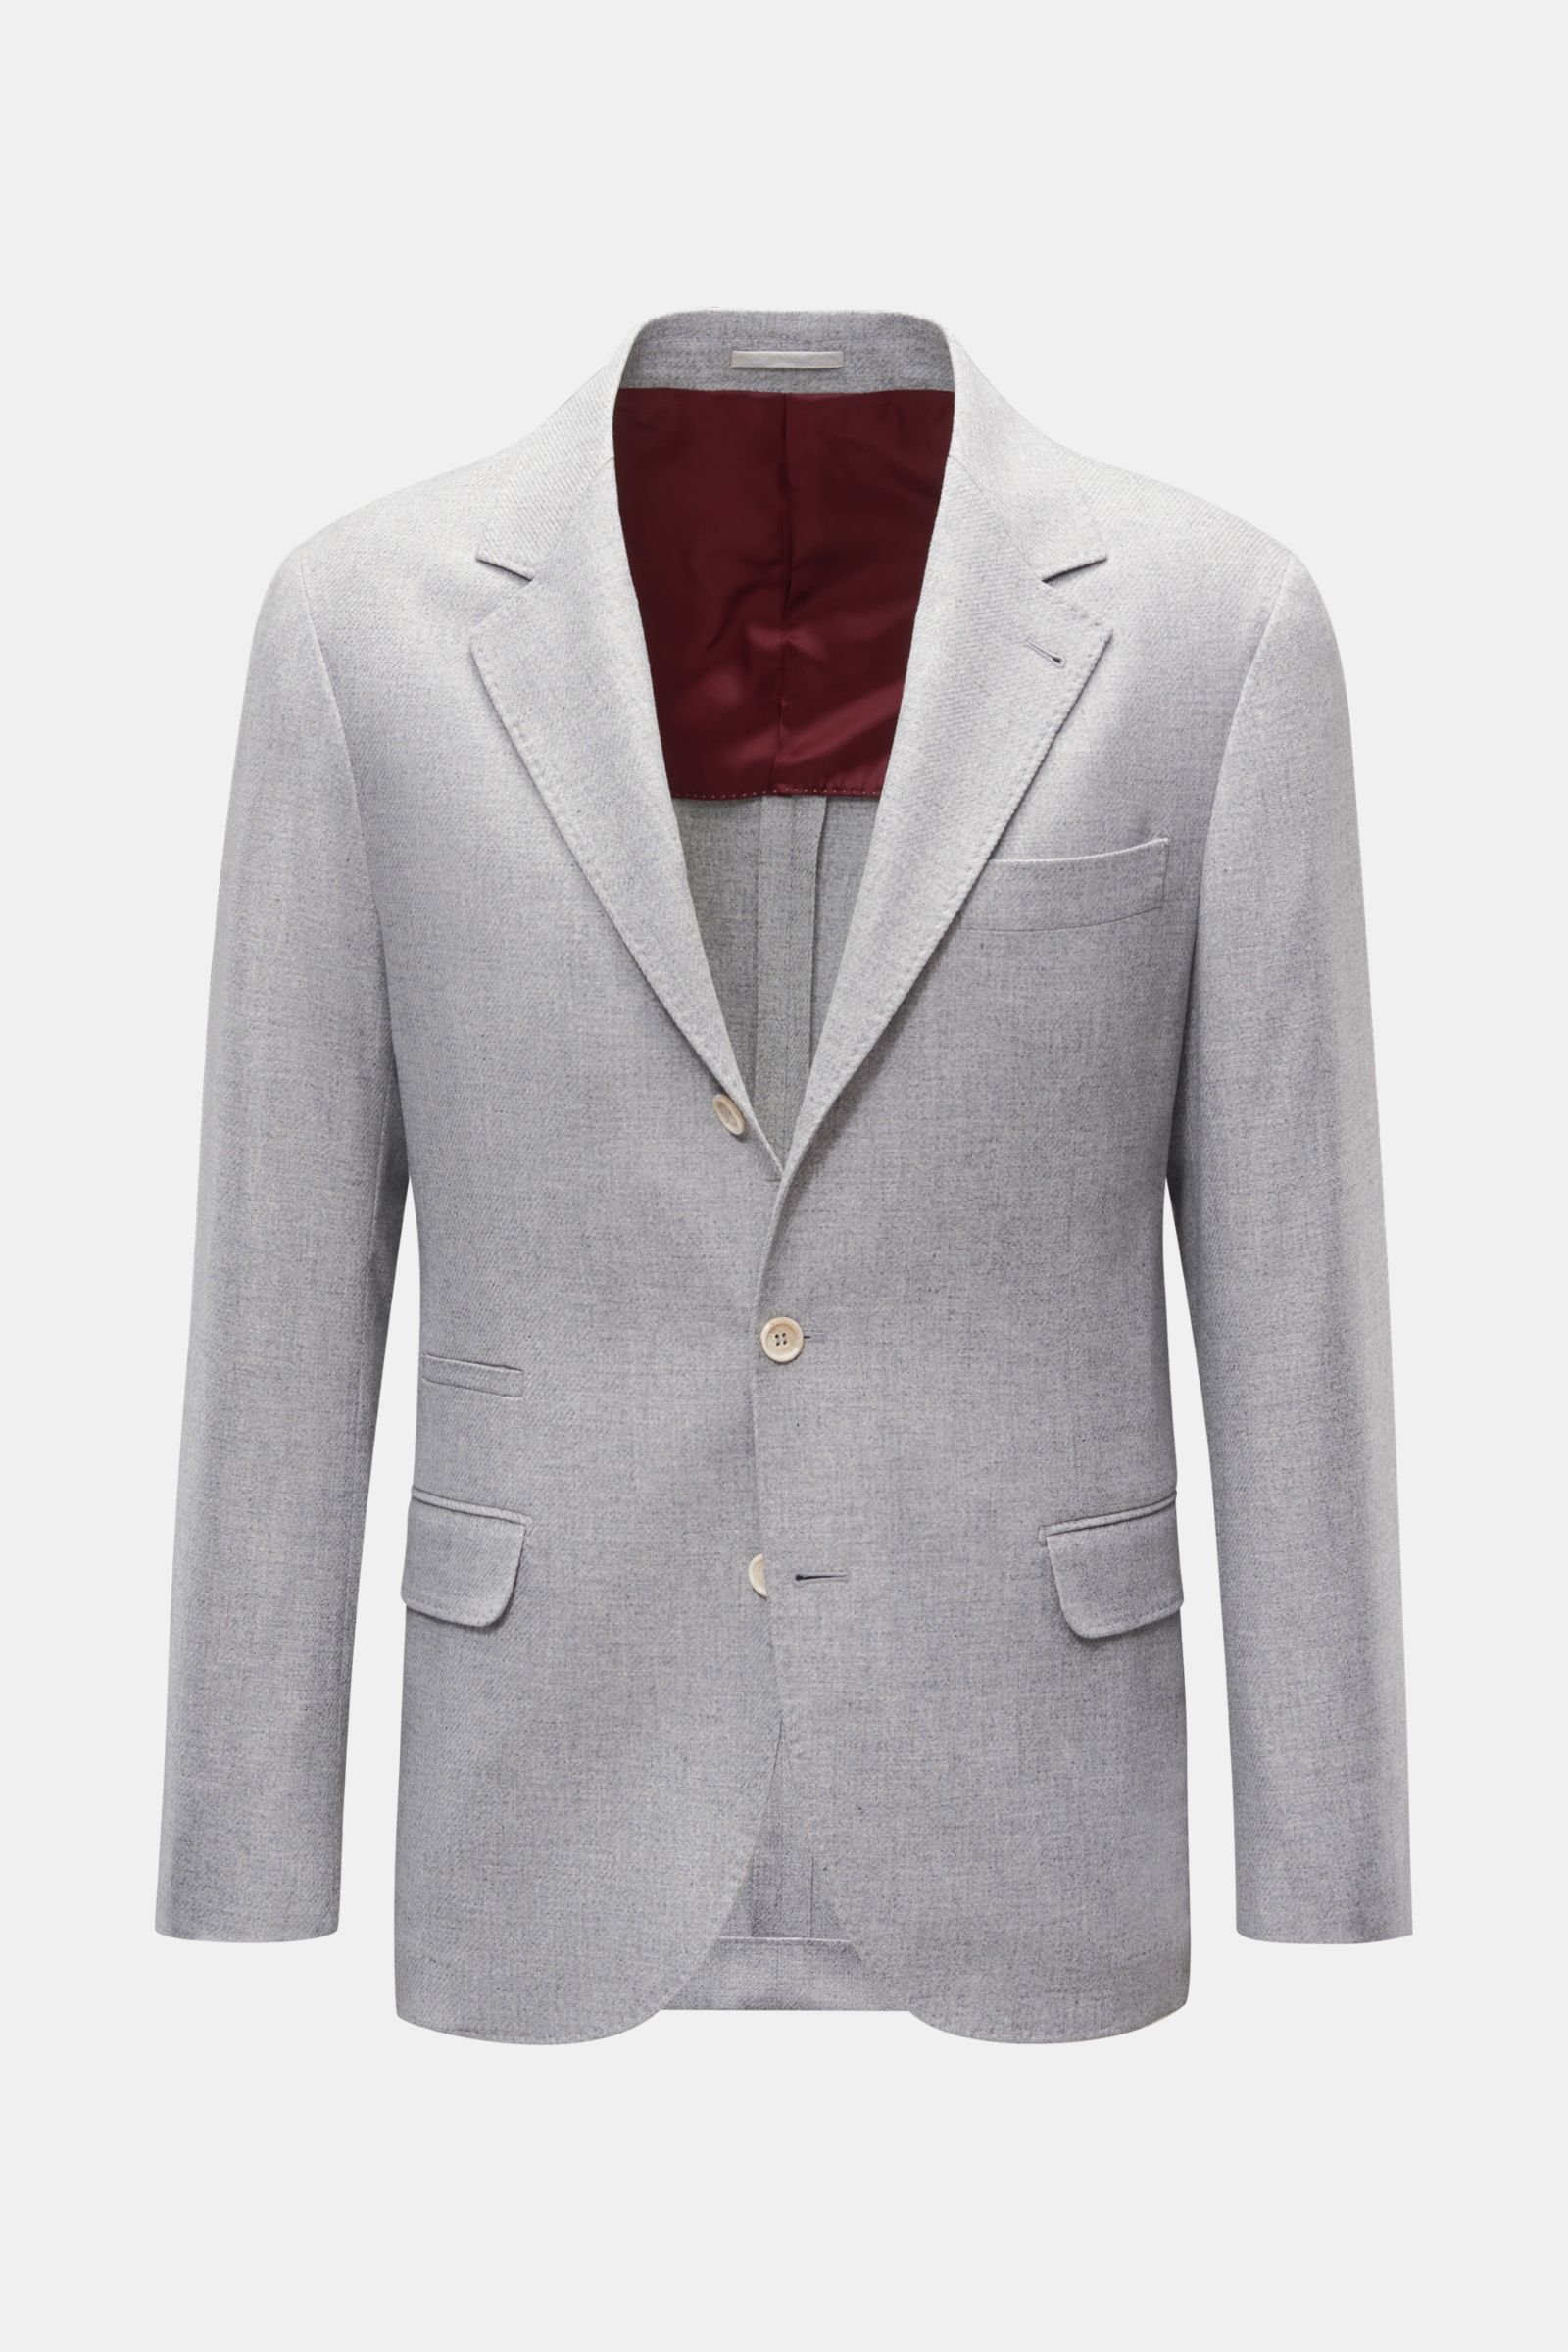 BRUNELLO CUCINELLI smart-casual jacket grey | BRAUN Hamburg